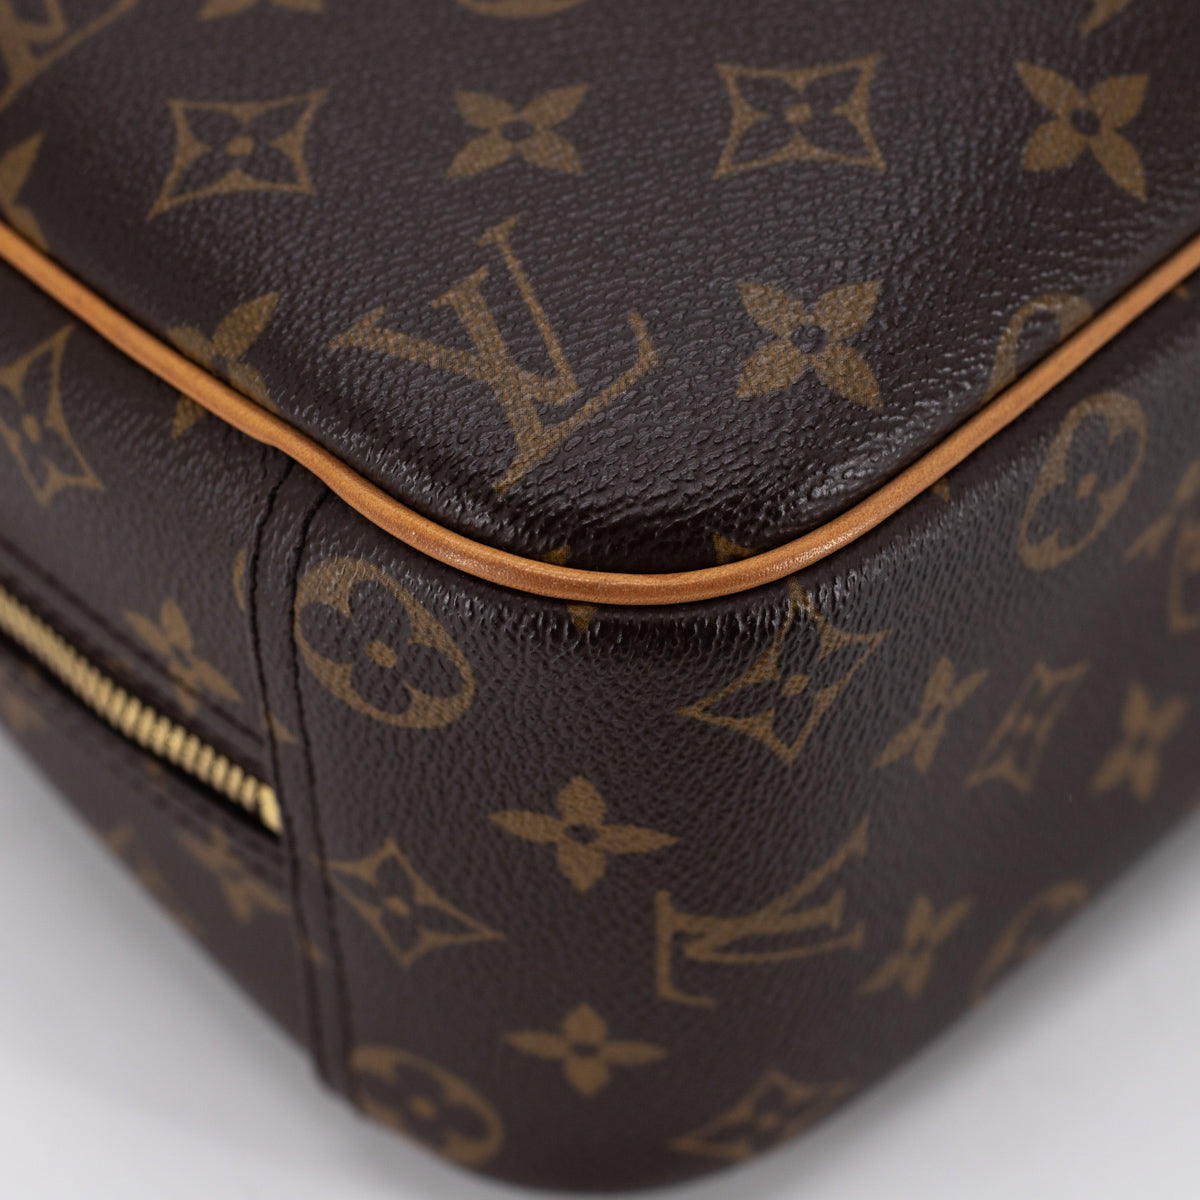 Louis Vuitton Trouville Handbag 280321